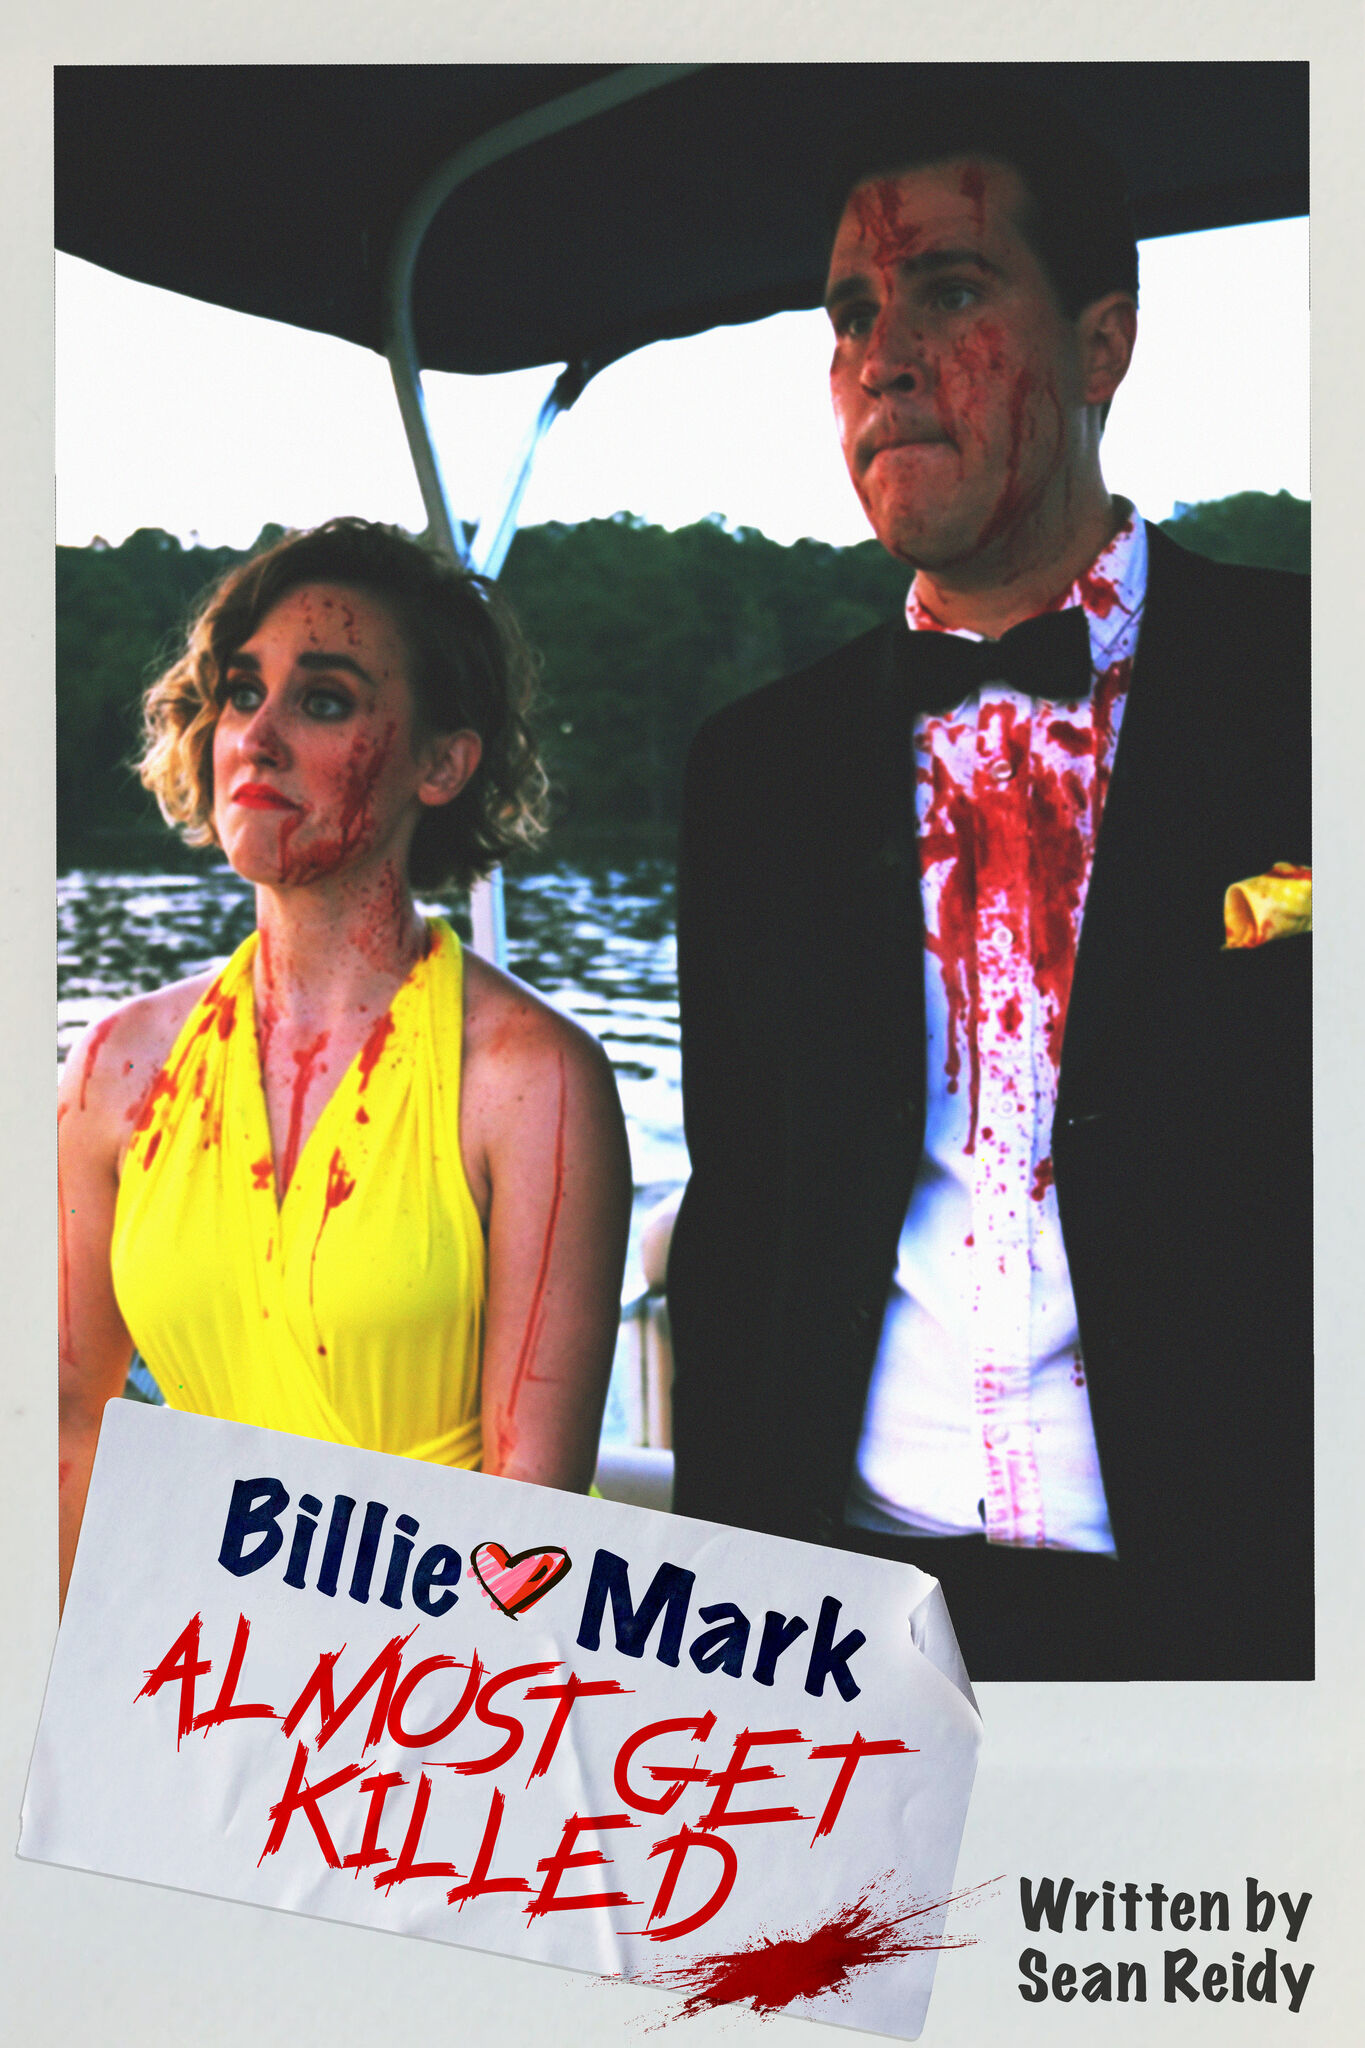 BILLIE & MARK ALMOST GET KILLED